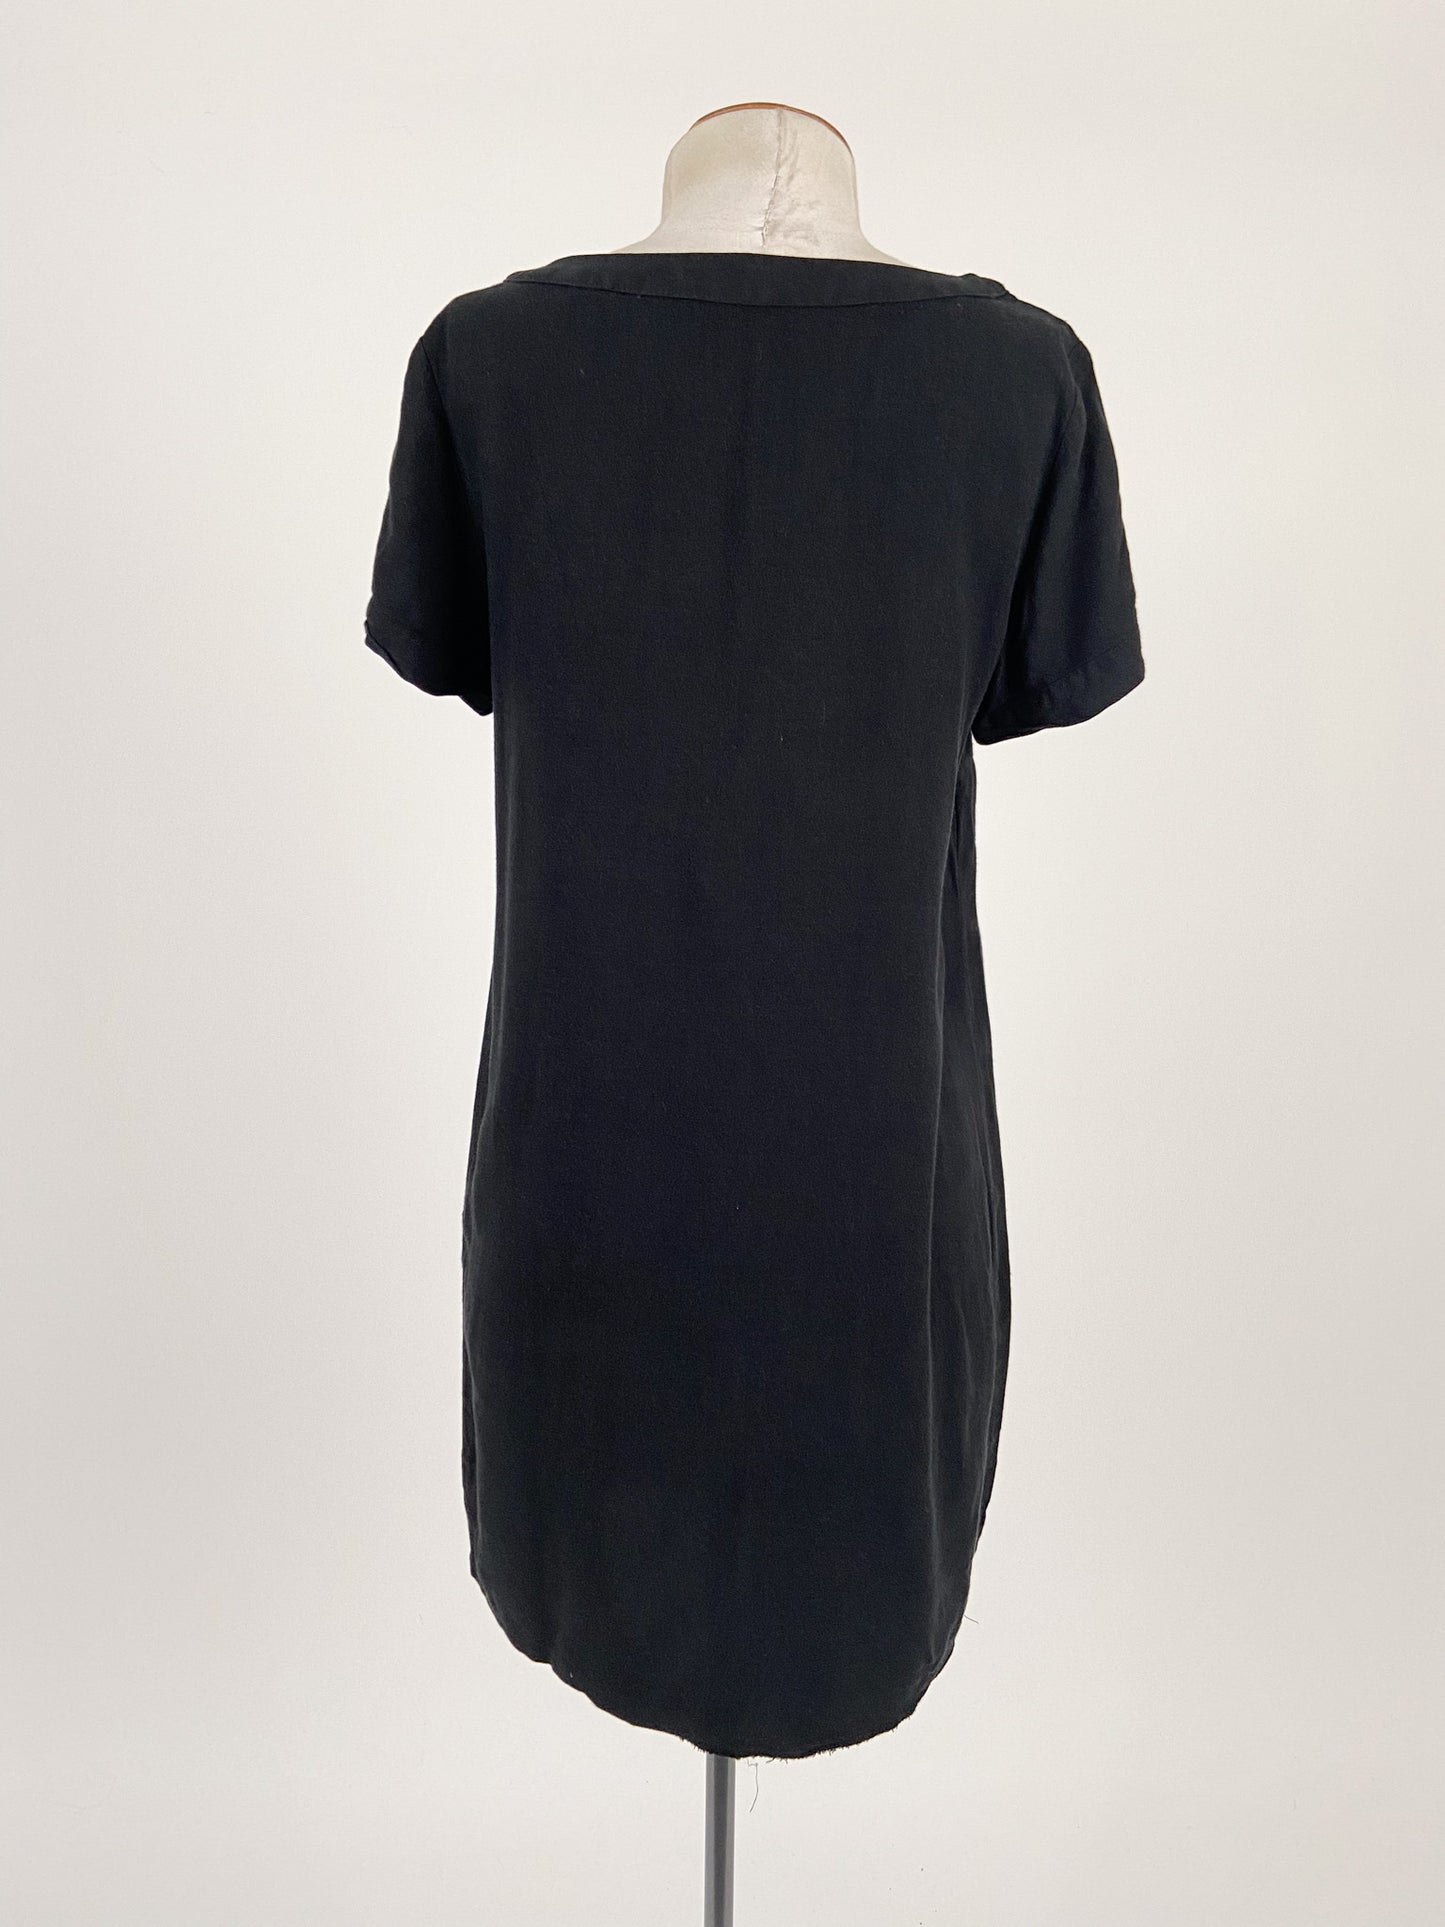 Zara | Black Casual Dress | Size S